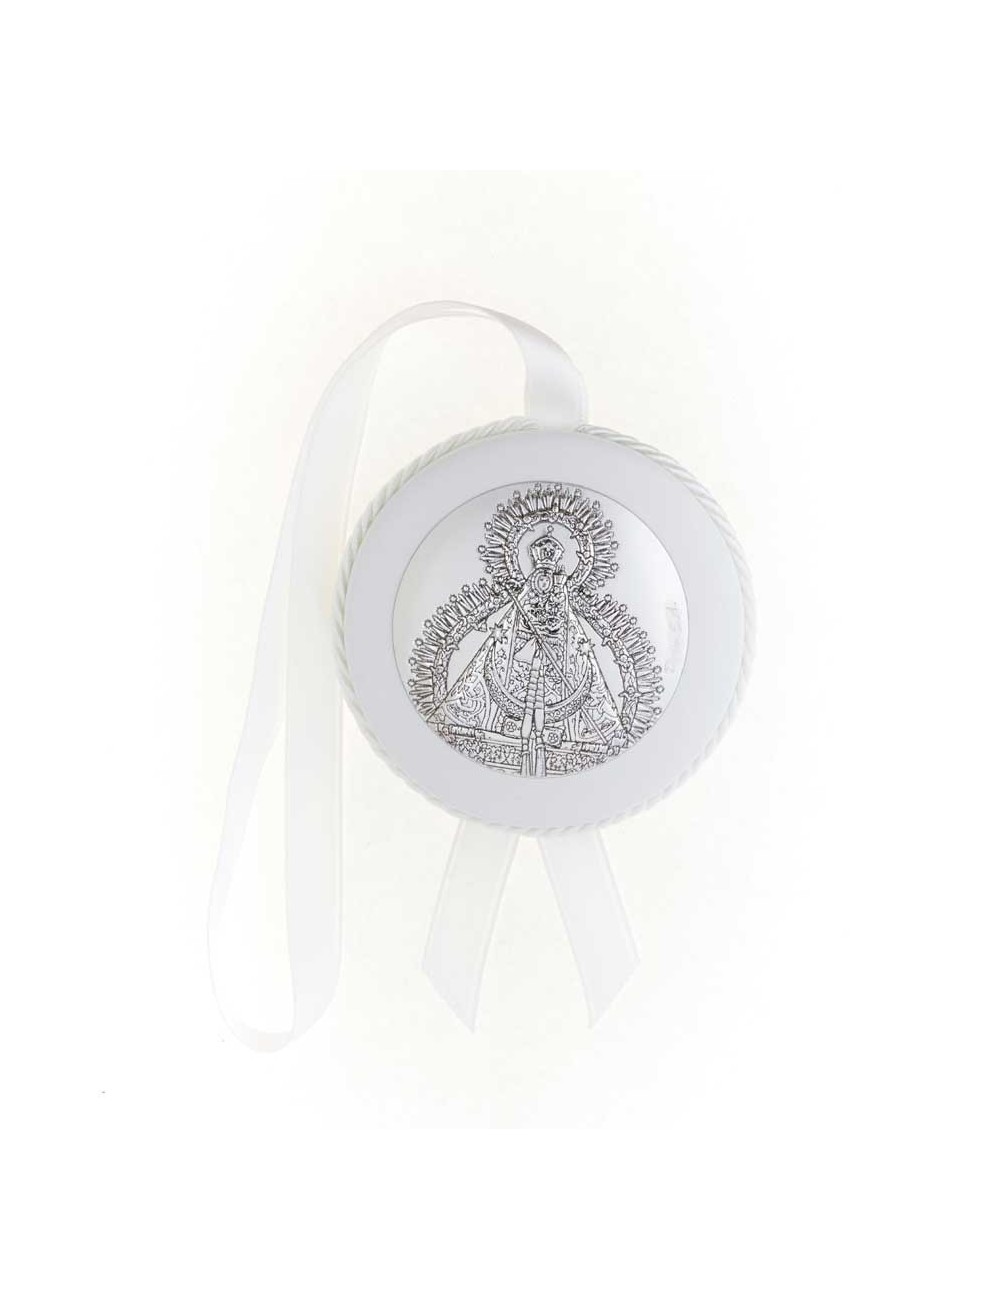 Medalla cuna Virgen de la Cabeza polipie blanca musical